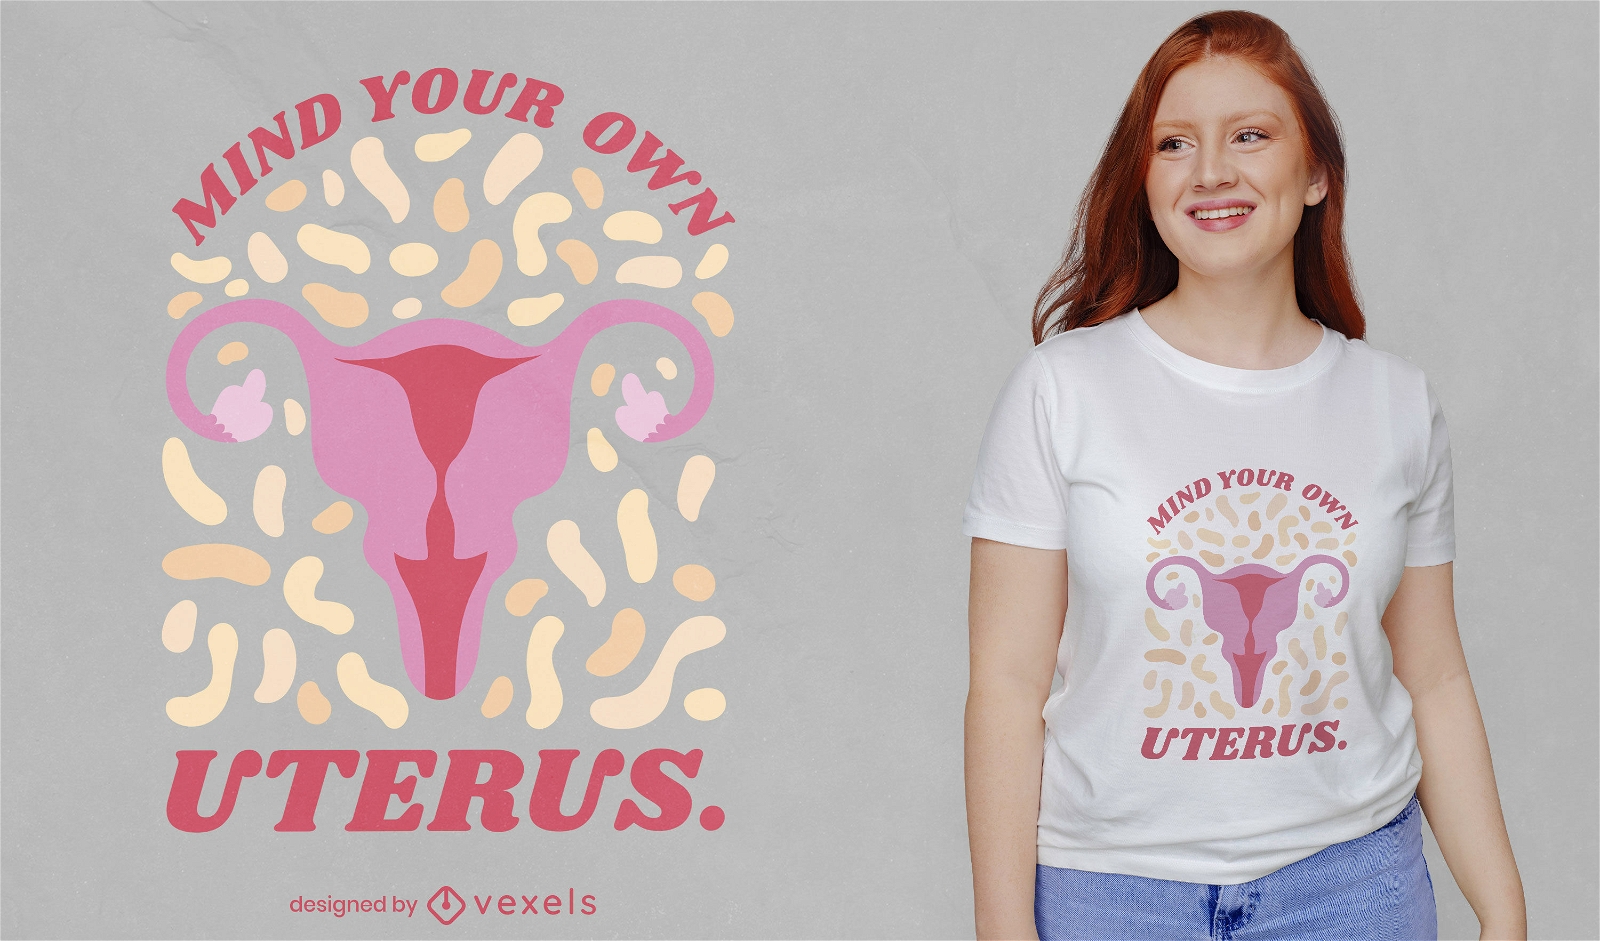 Uterus silhouette quote t-shirt design